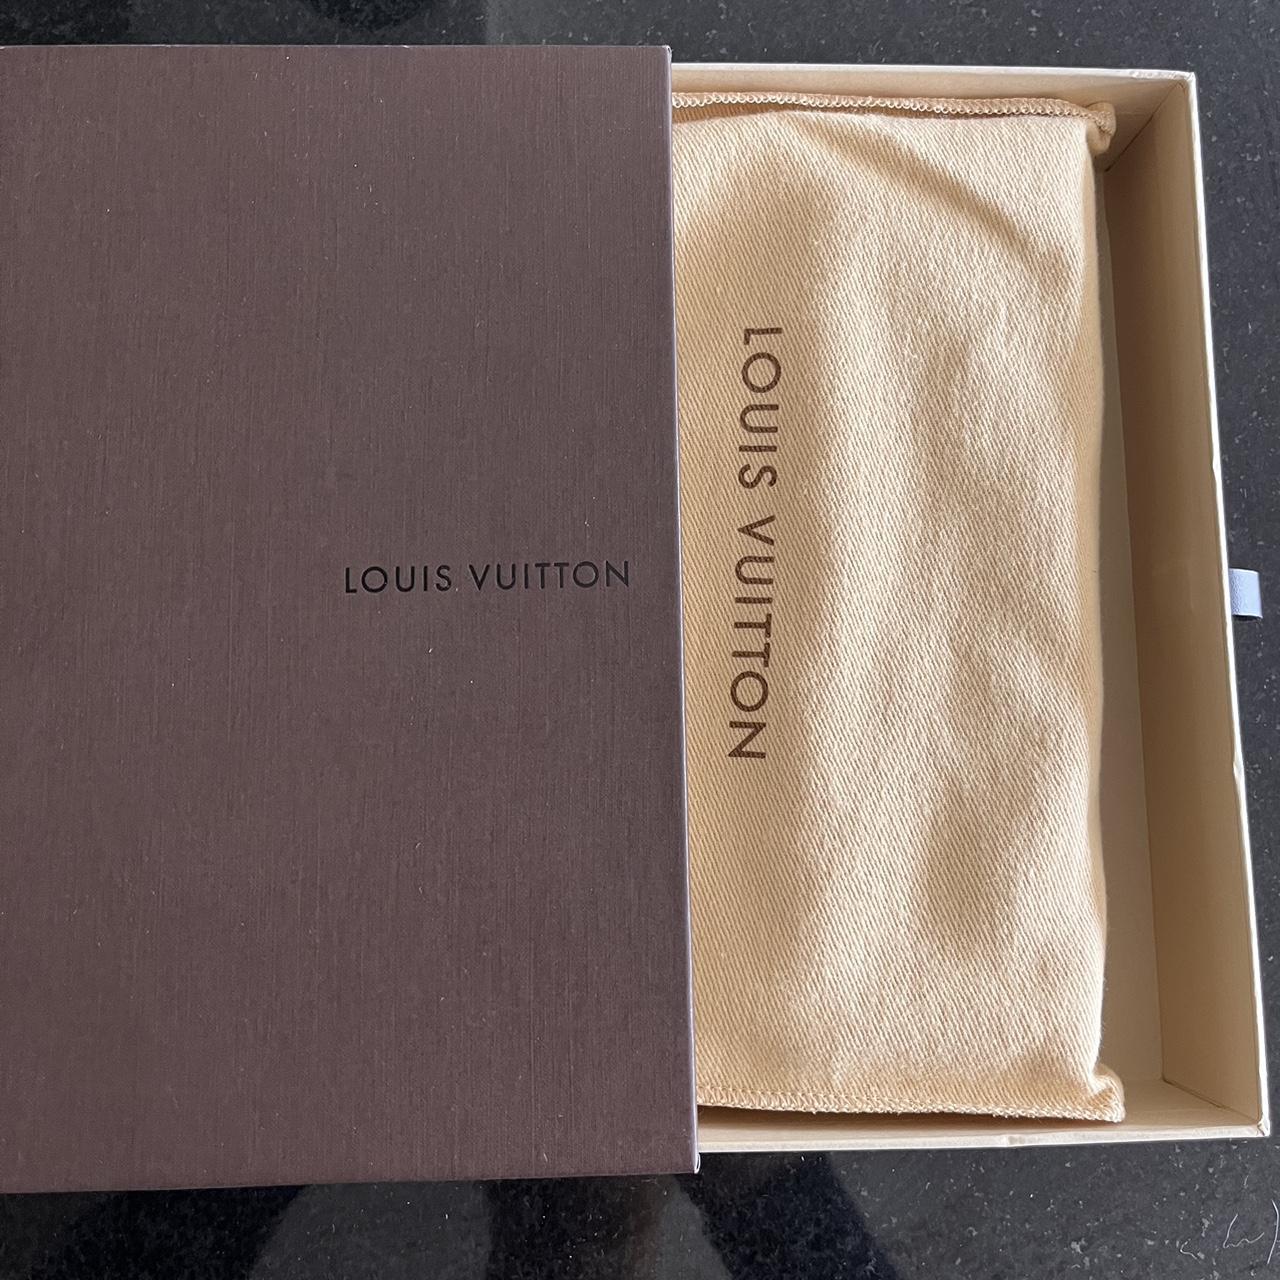 Authentic Louis Vuitton Sarah Wallet Little strip of - Depop